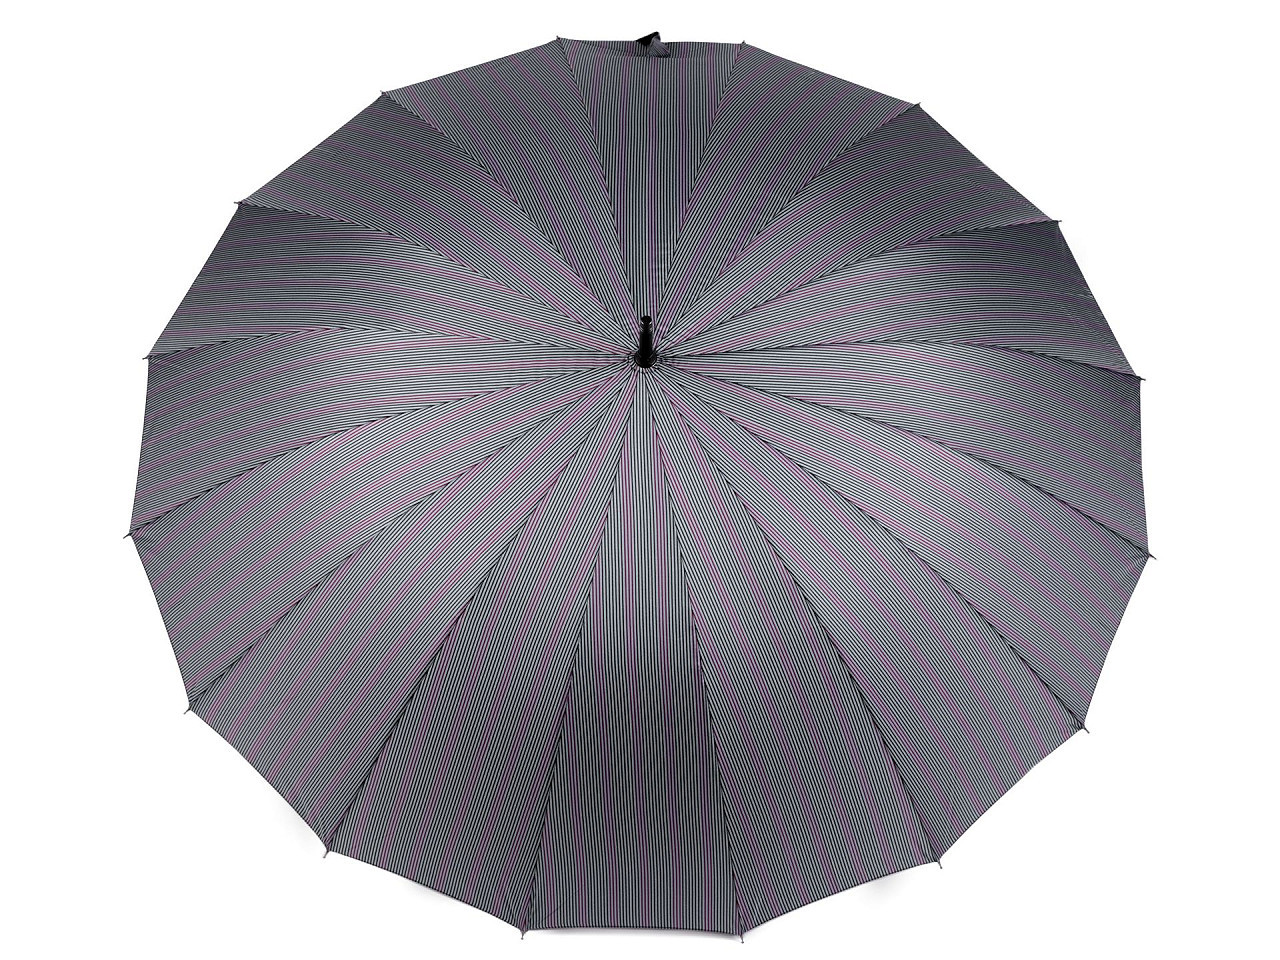 Velký rodinný vystřelovací deštník, barva 1 šedá světlá proužky